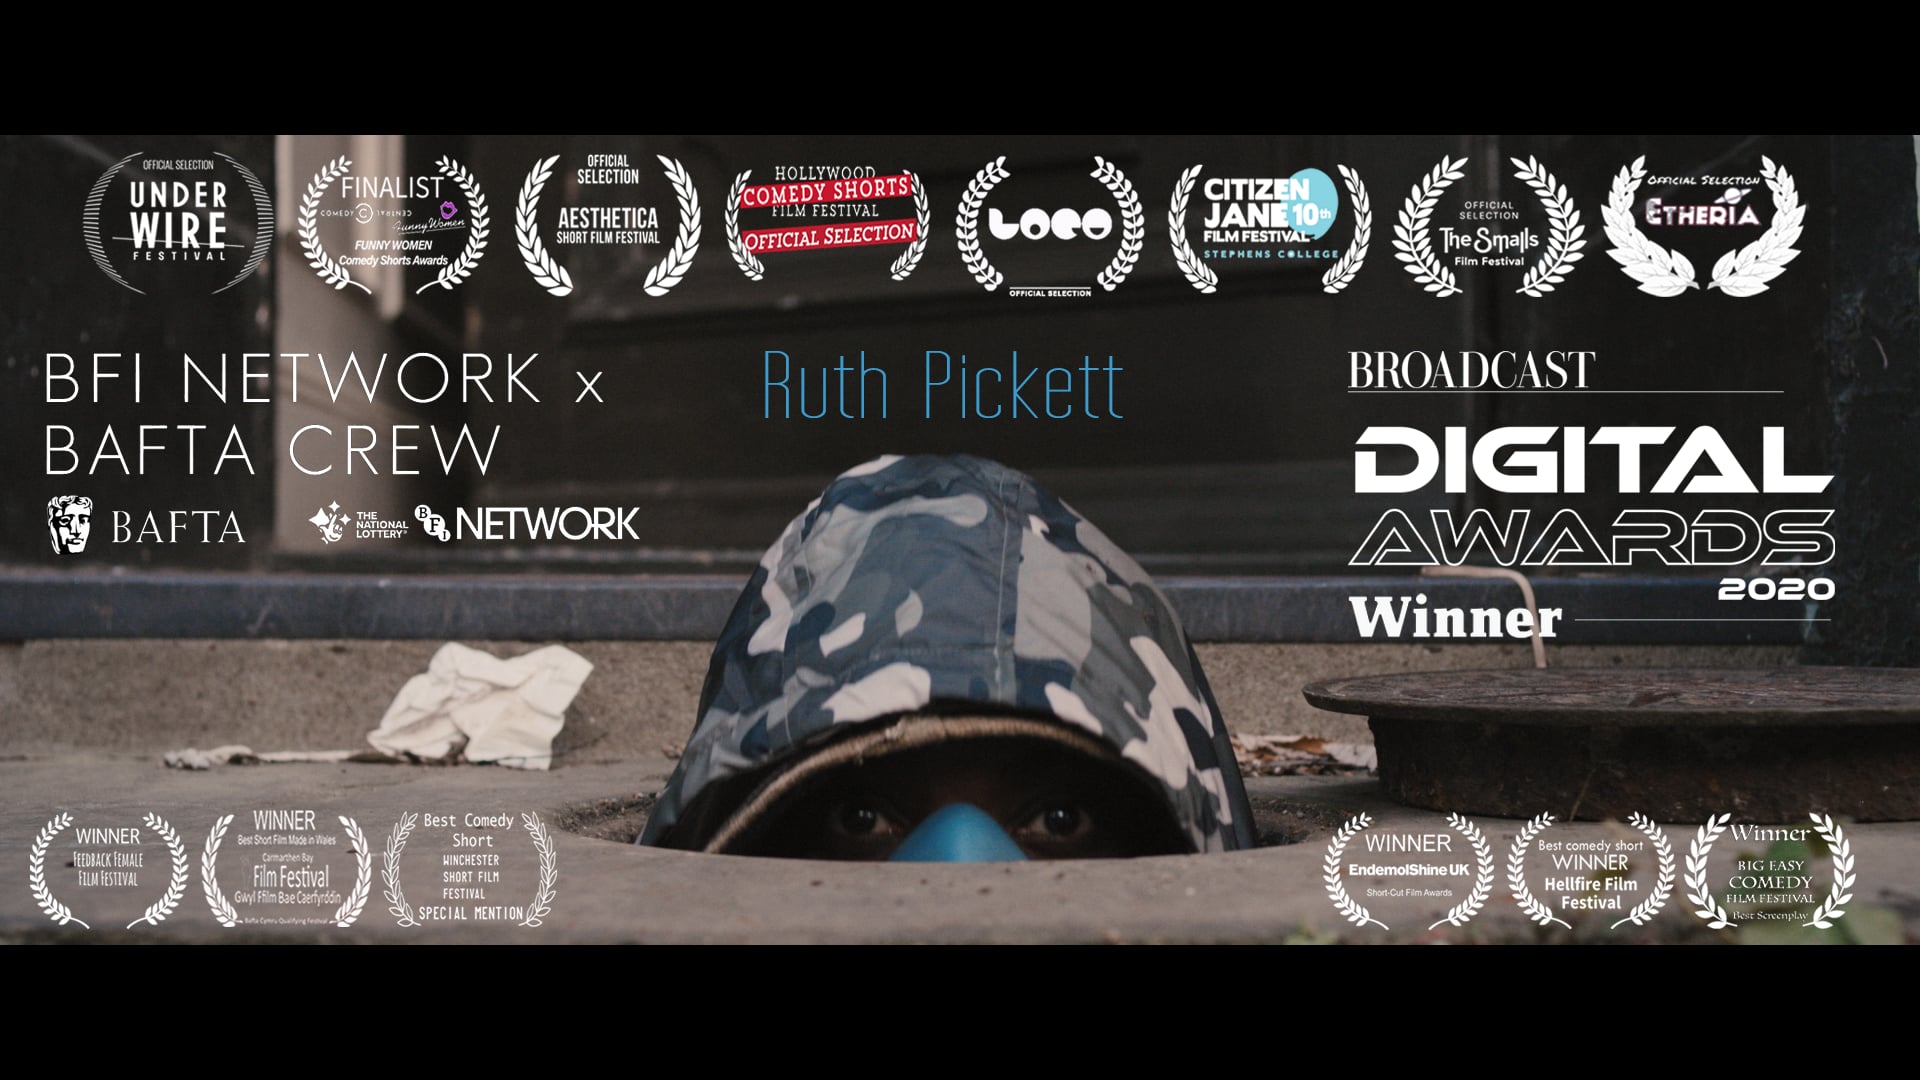 Ruth Pickett - Writer / Director reel